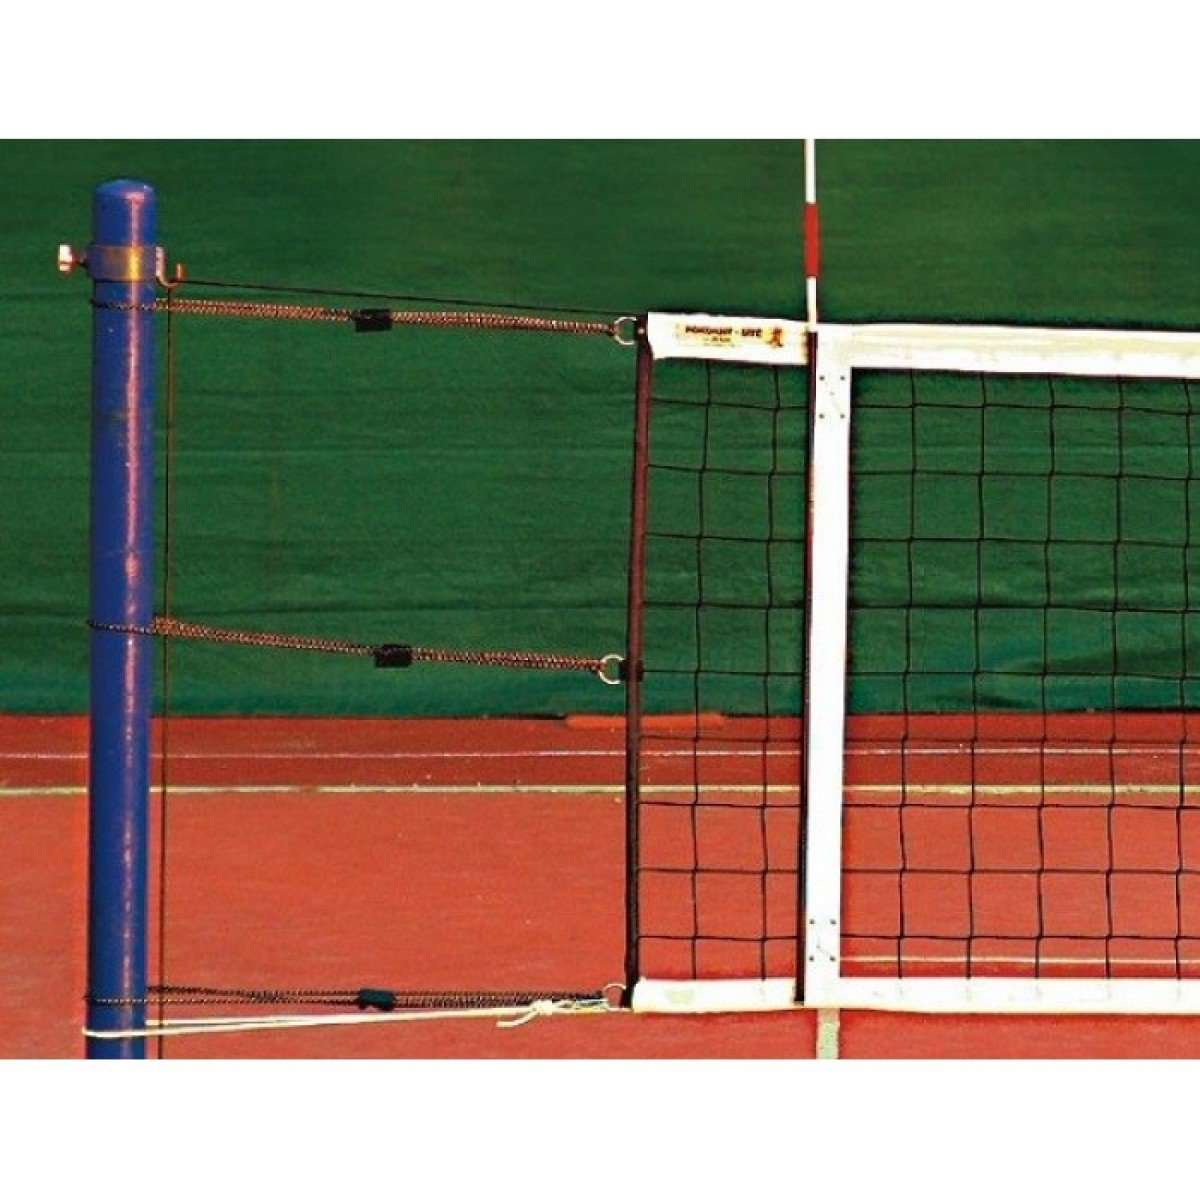 Выберите правильный вариант высоты волейбольной сетки женская. Стойки волейбольные Haspo Standard 924-512. Пв002 стойки волейбольные (регулируемые) + сетка для волейбола. Крепление волейбольной сетки. Крепеж для волейбольной сетки.